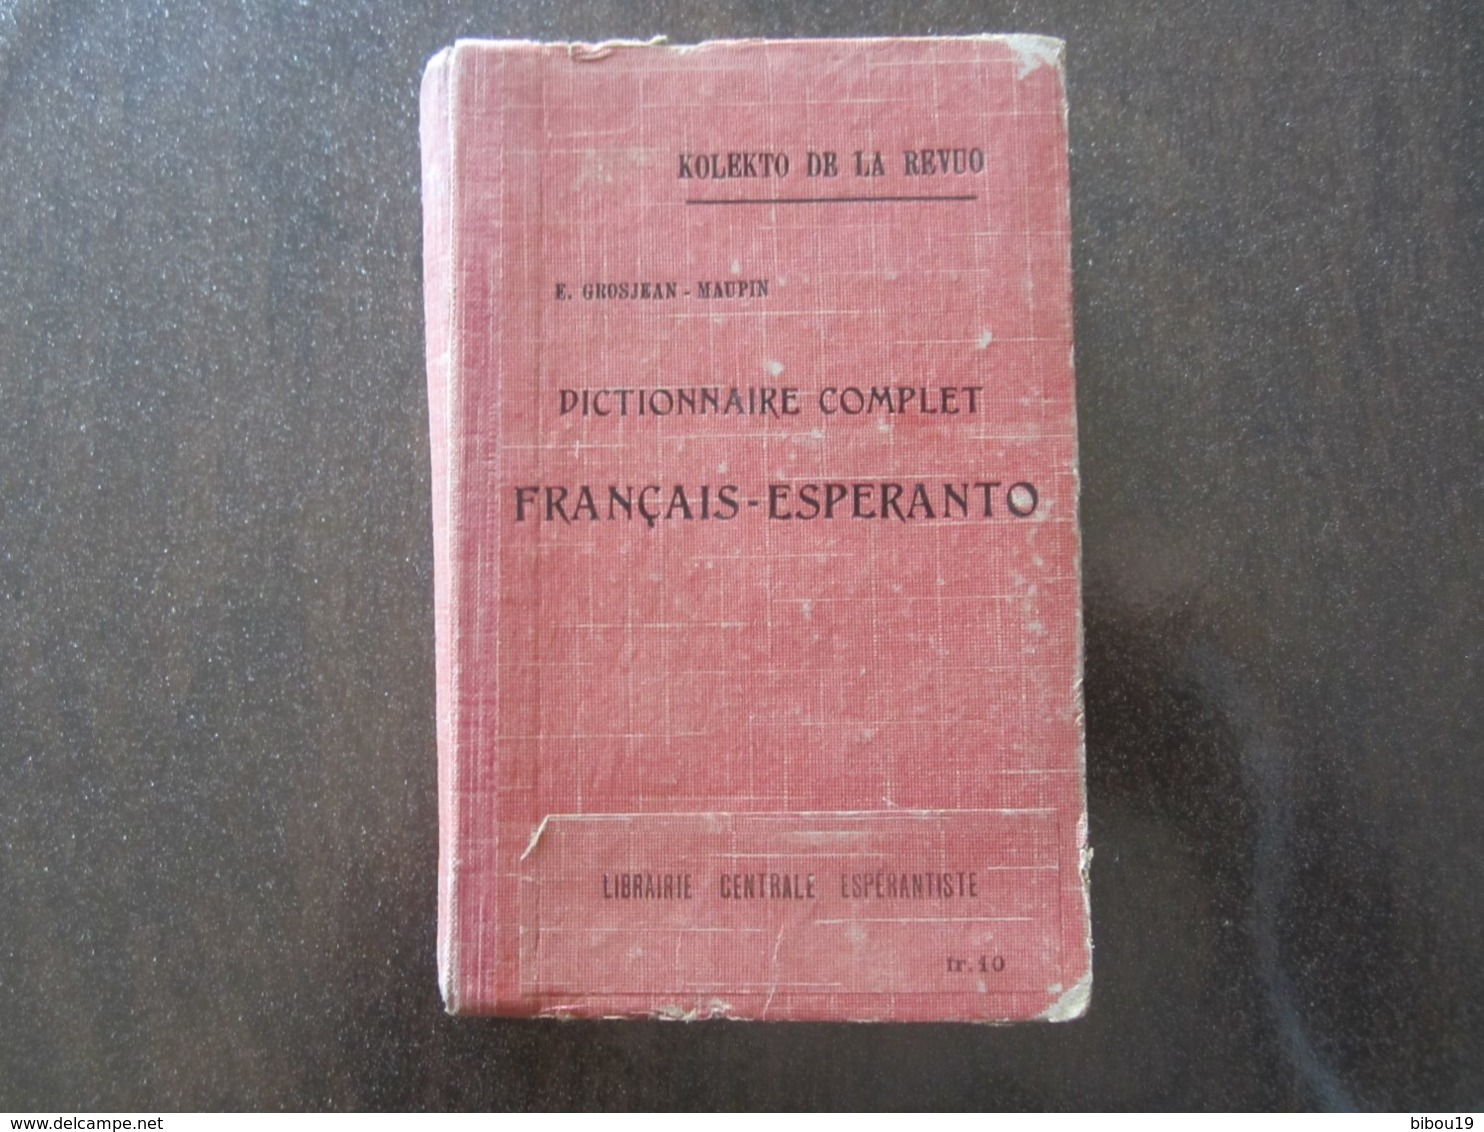 DICTIONNAIRE COMPLET FRANCAIS ESPERANTO  1913  KOLEKTO DE LA REVUO - Dictionnaires